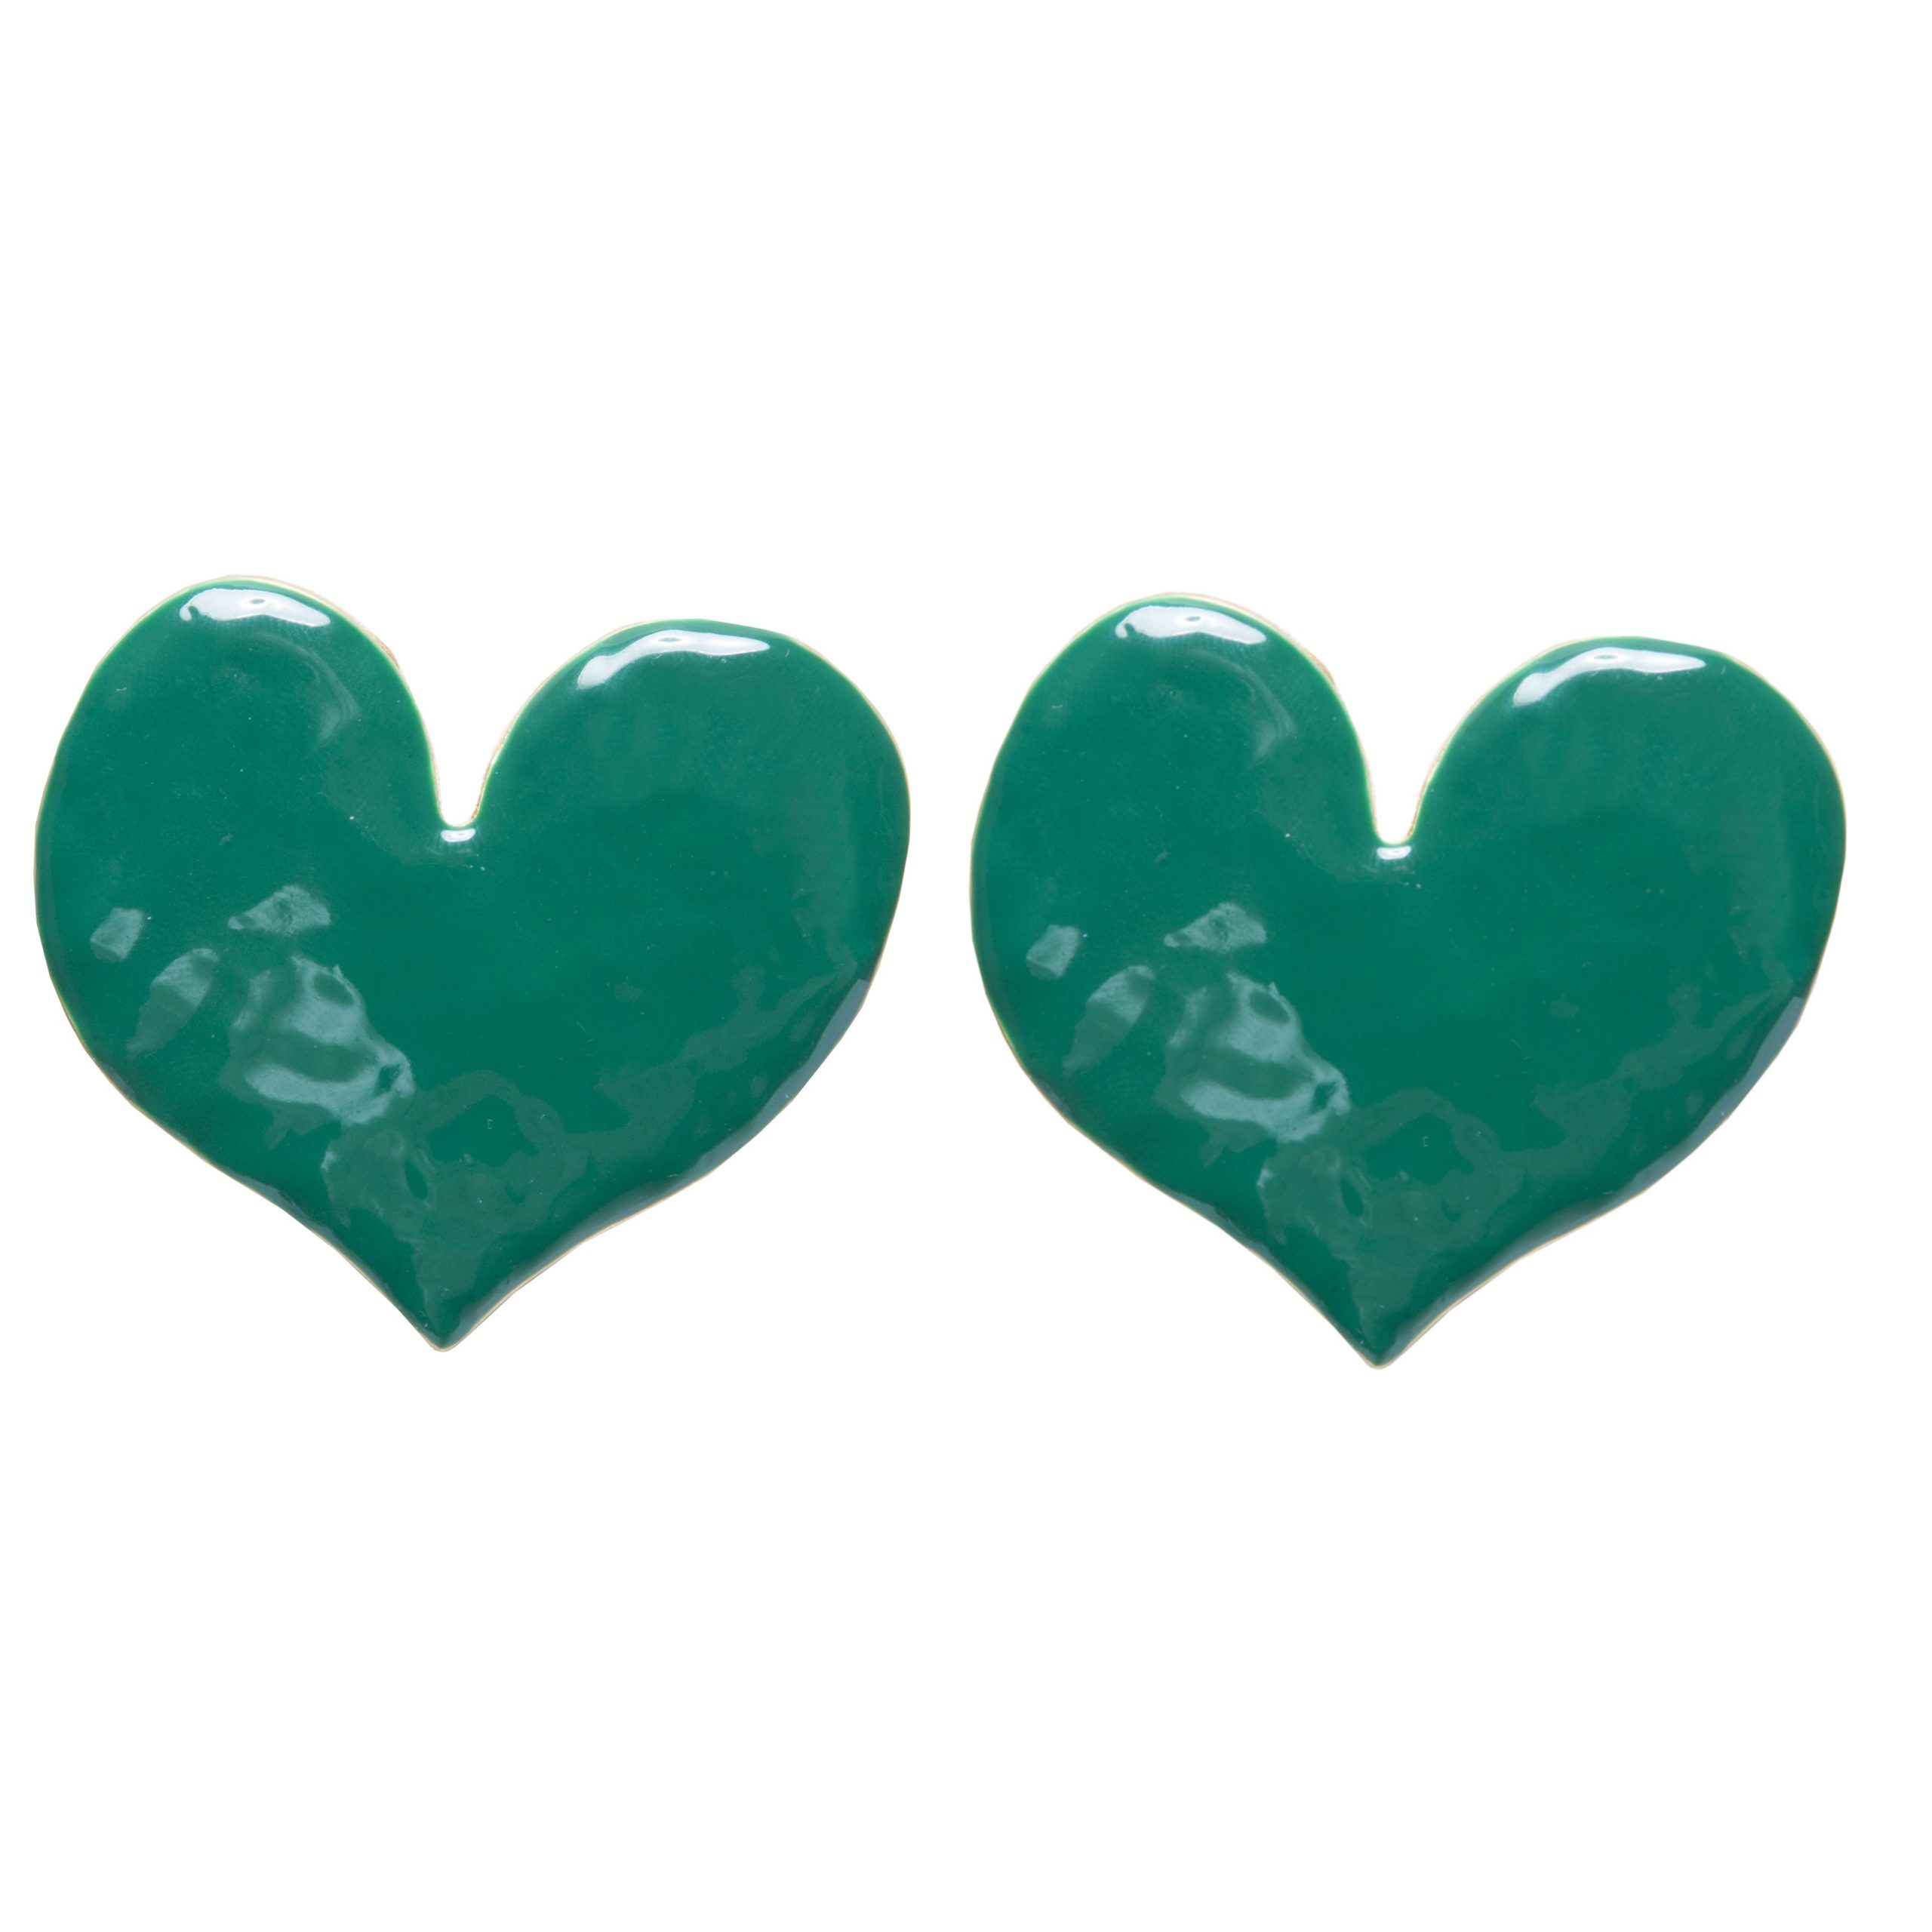 Green extra large enamel heart earrings